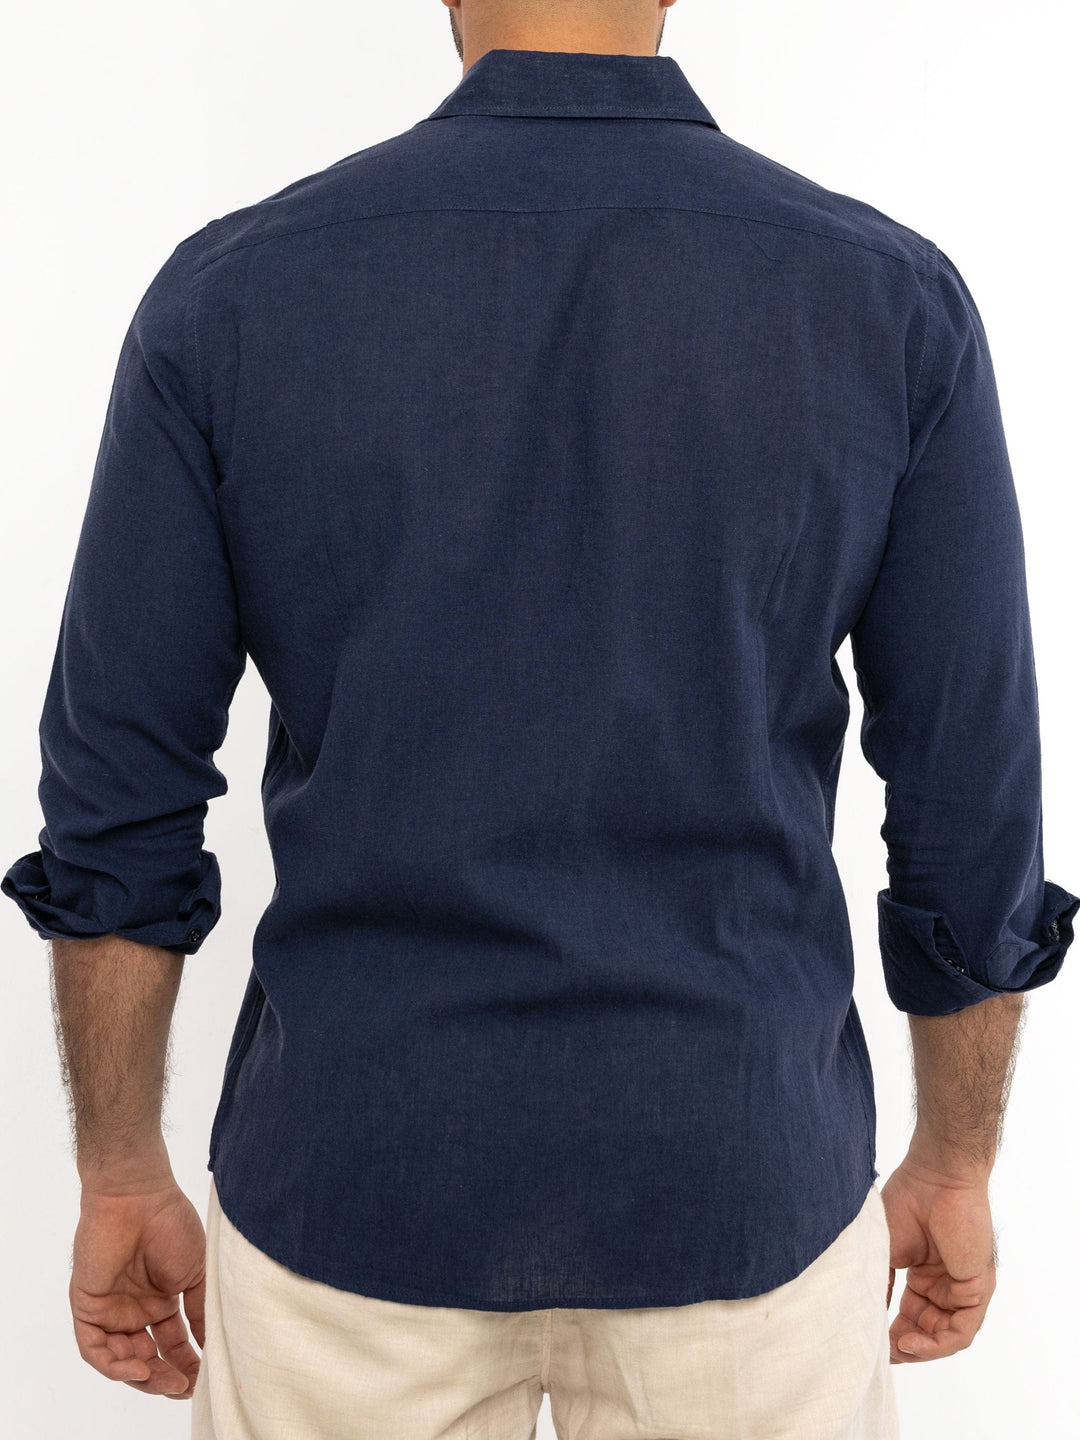 Zhivago x Nuuk Men Linen Shirt Navy Blue Linen Shirt